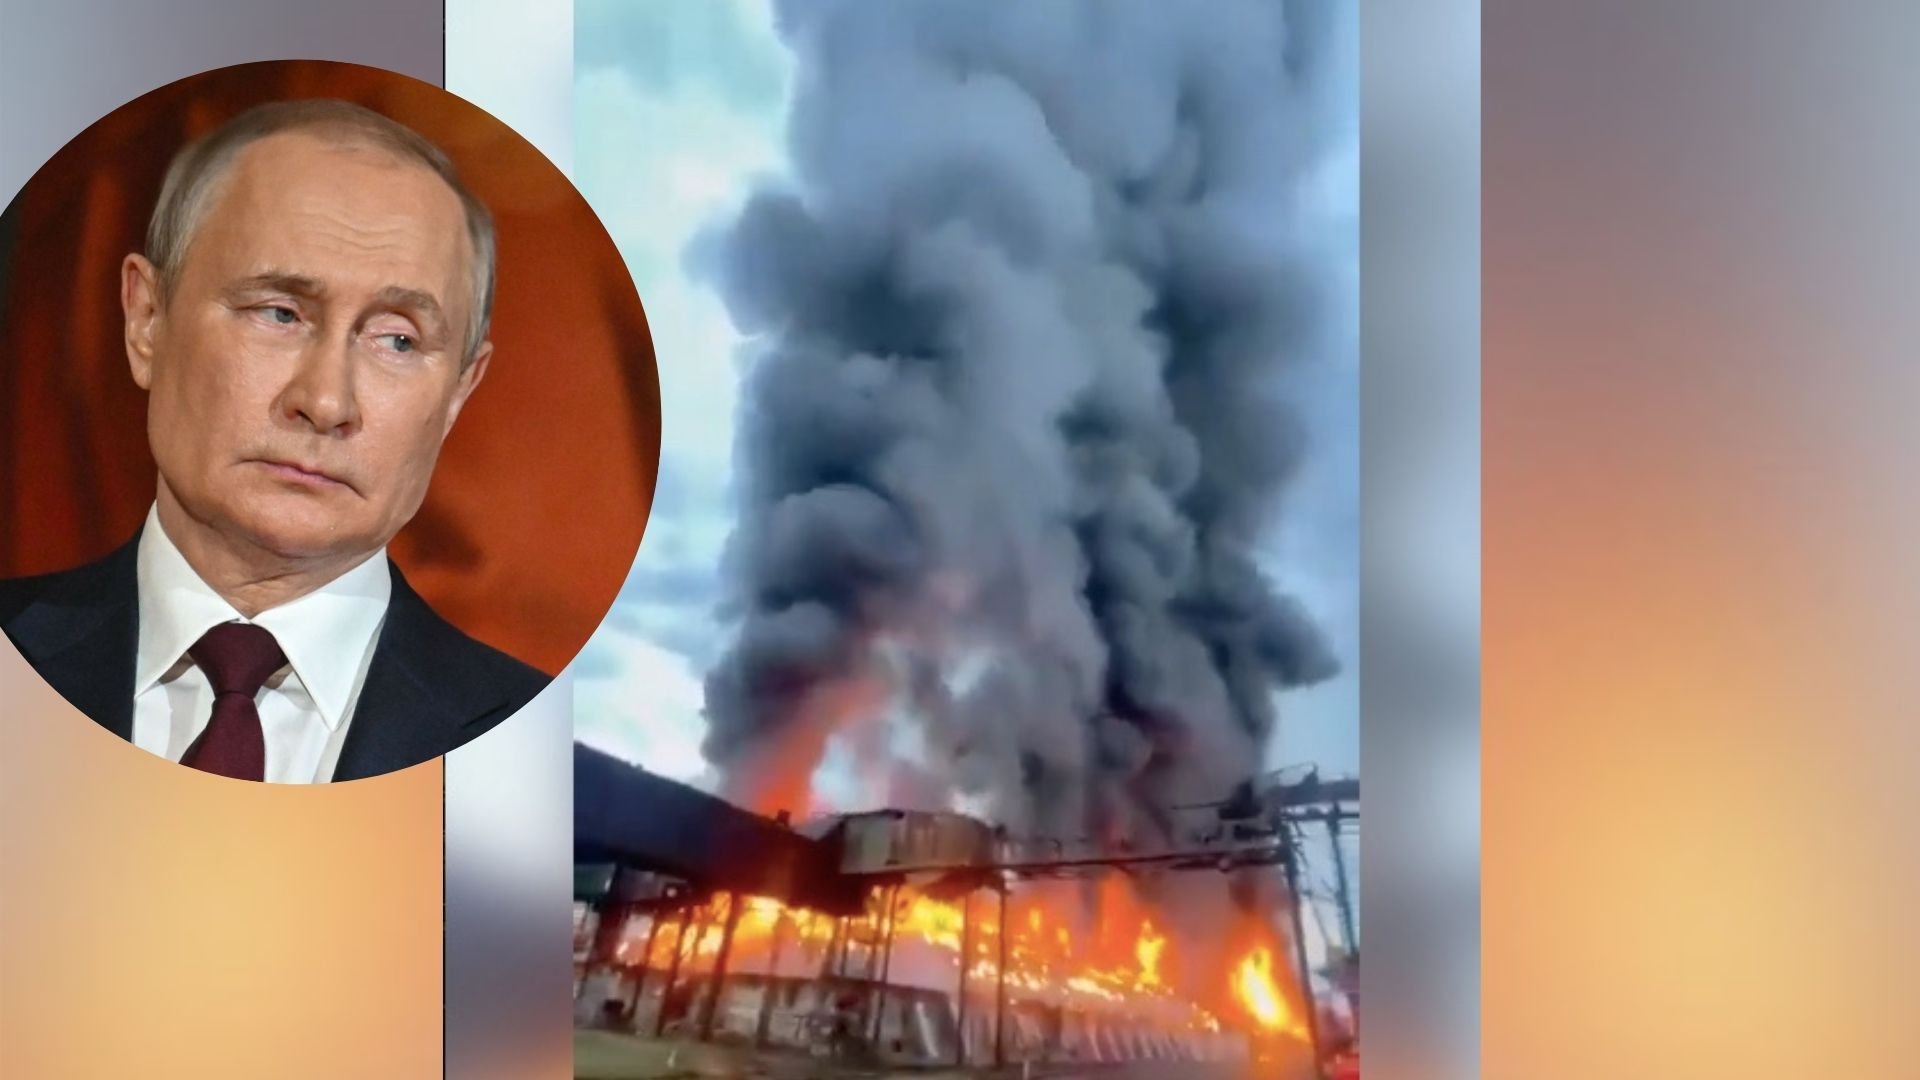 Kolejny gigantyczny pożar w Rosji, spłonął magazyn z żywnością